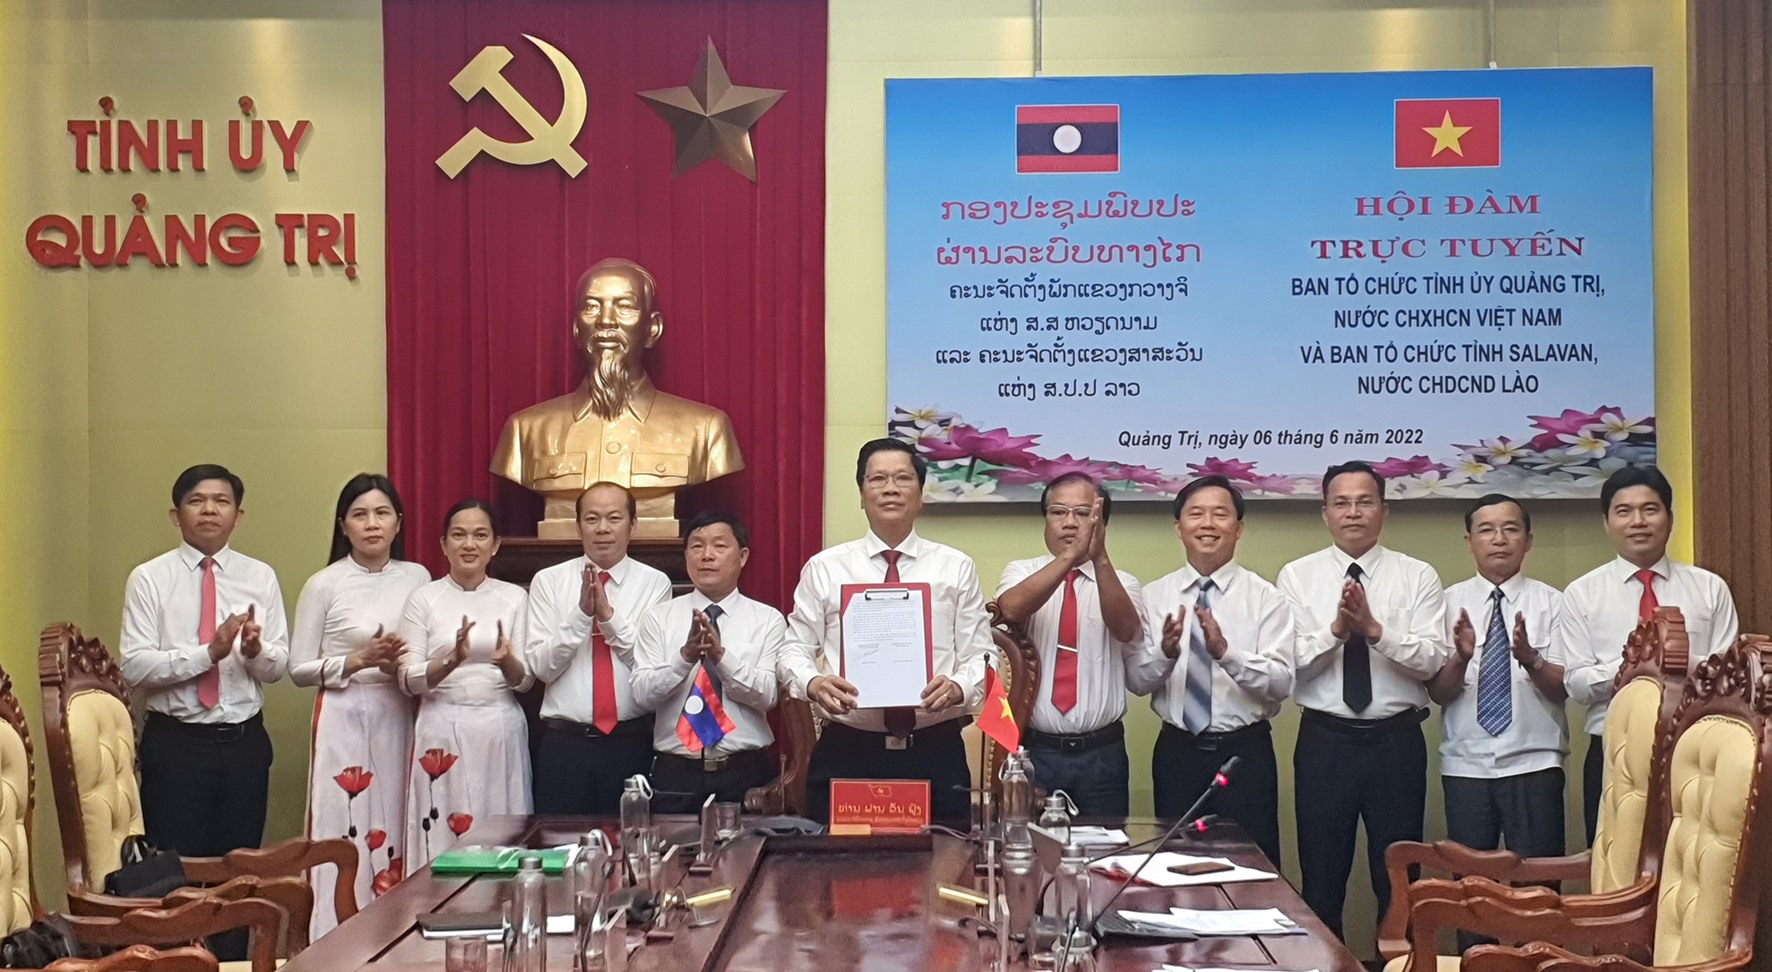 Trưởng Ban Tổ chức Tỉnh ủy Quảng Trị Phan Văn Phụng ký biên bản ghi nhớ giai đoạn 2022 - 2024 - Ảnh: L.N